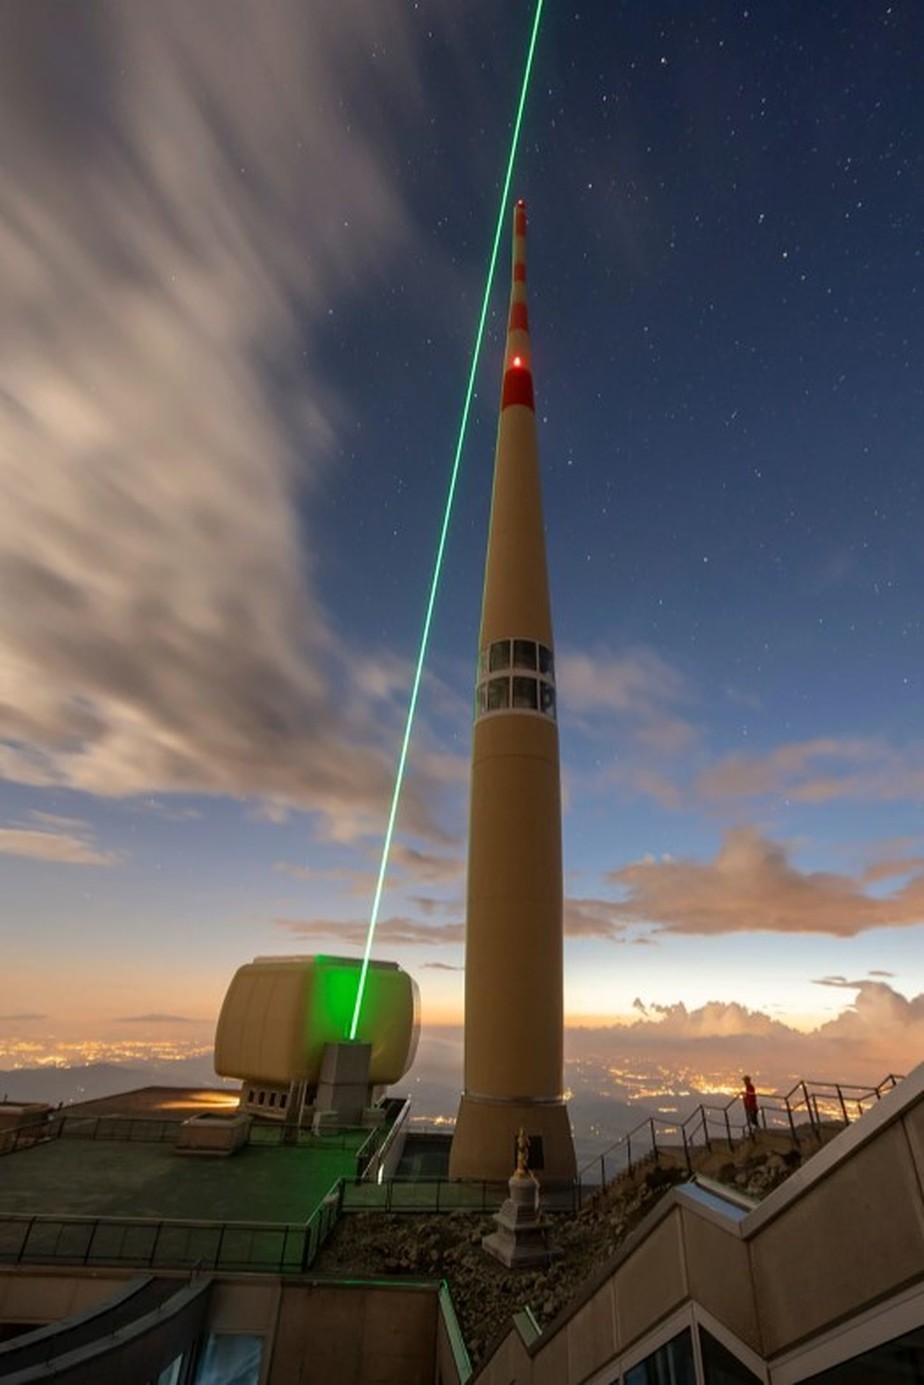 Laser disparado de dentro de telescópio numa montanha na Suíça desviou raios